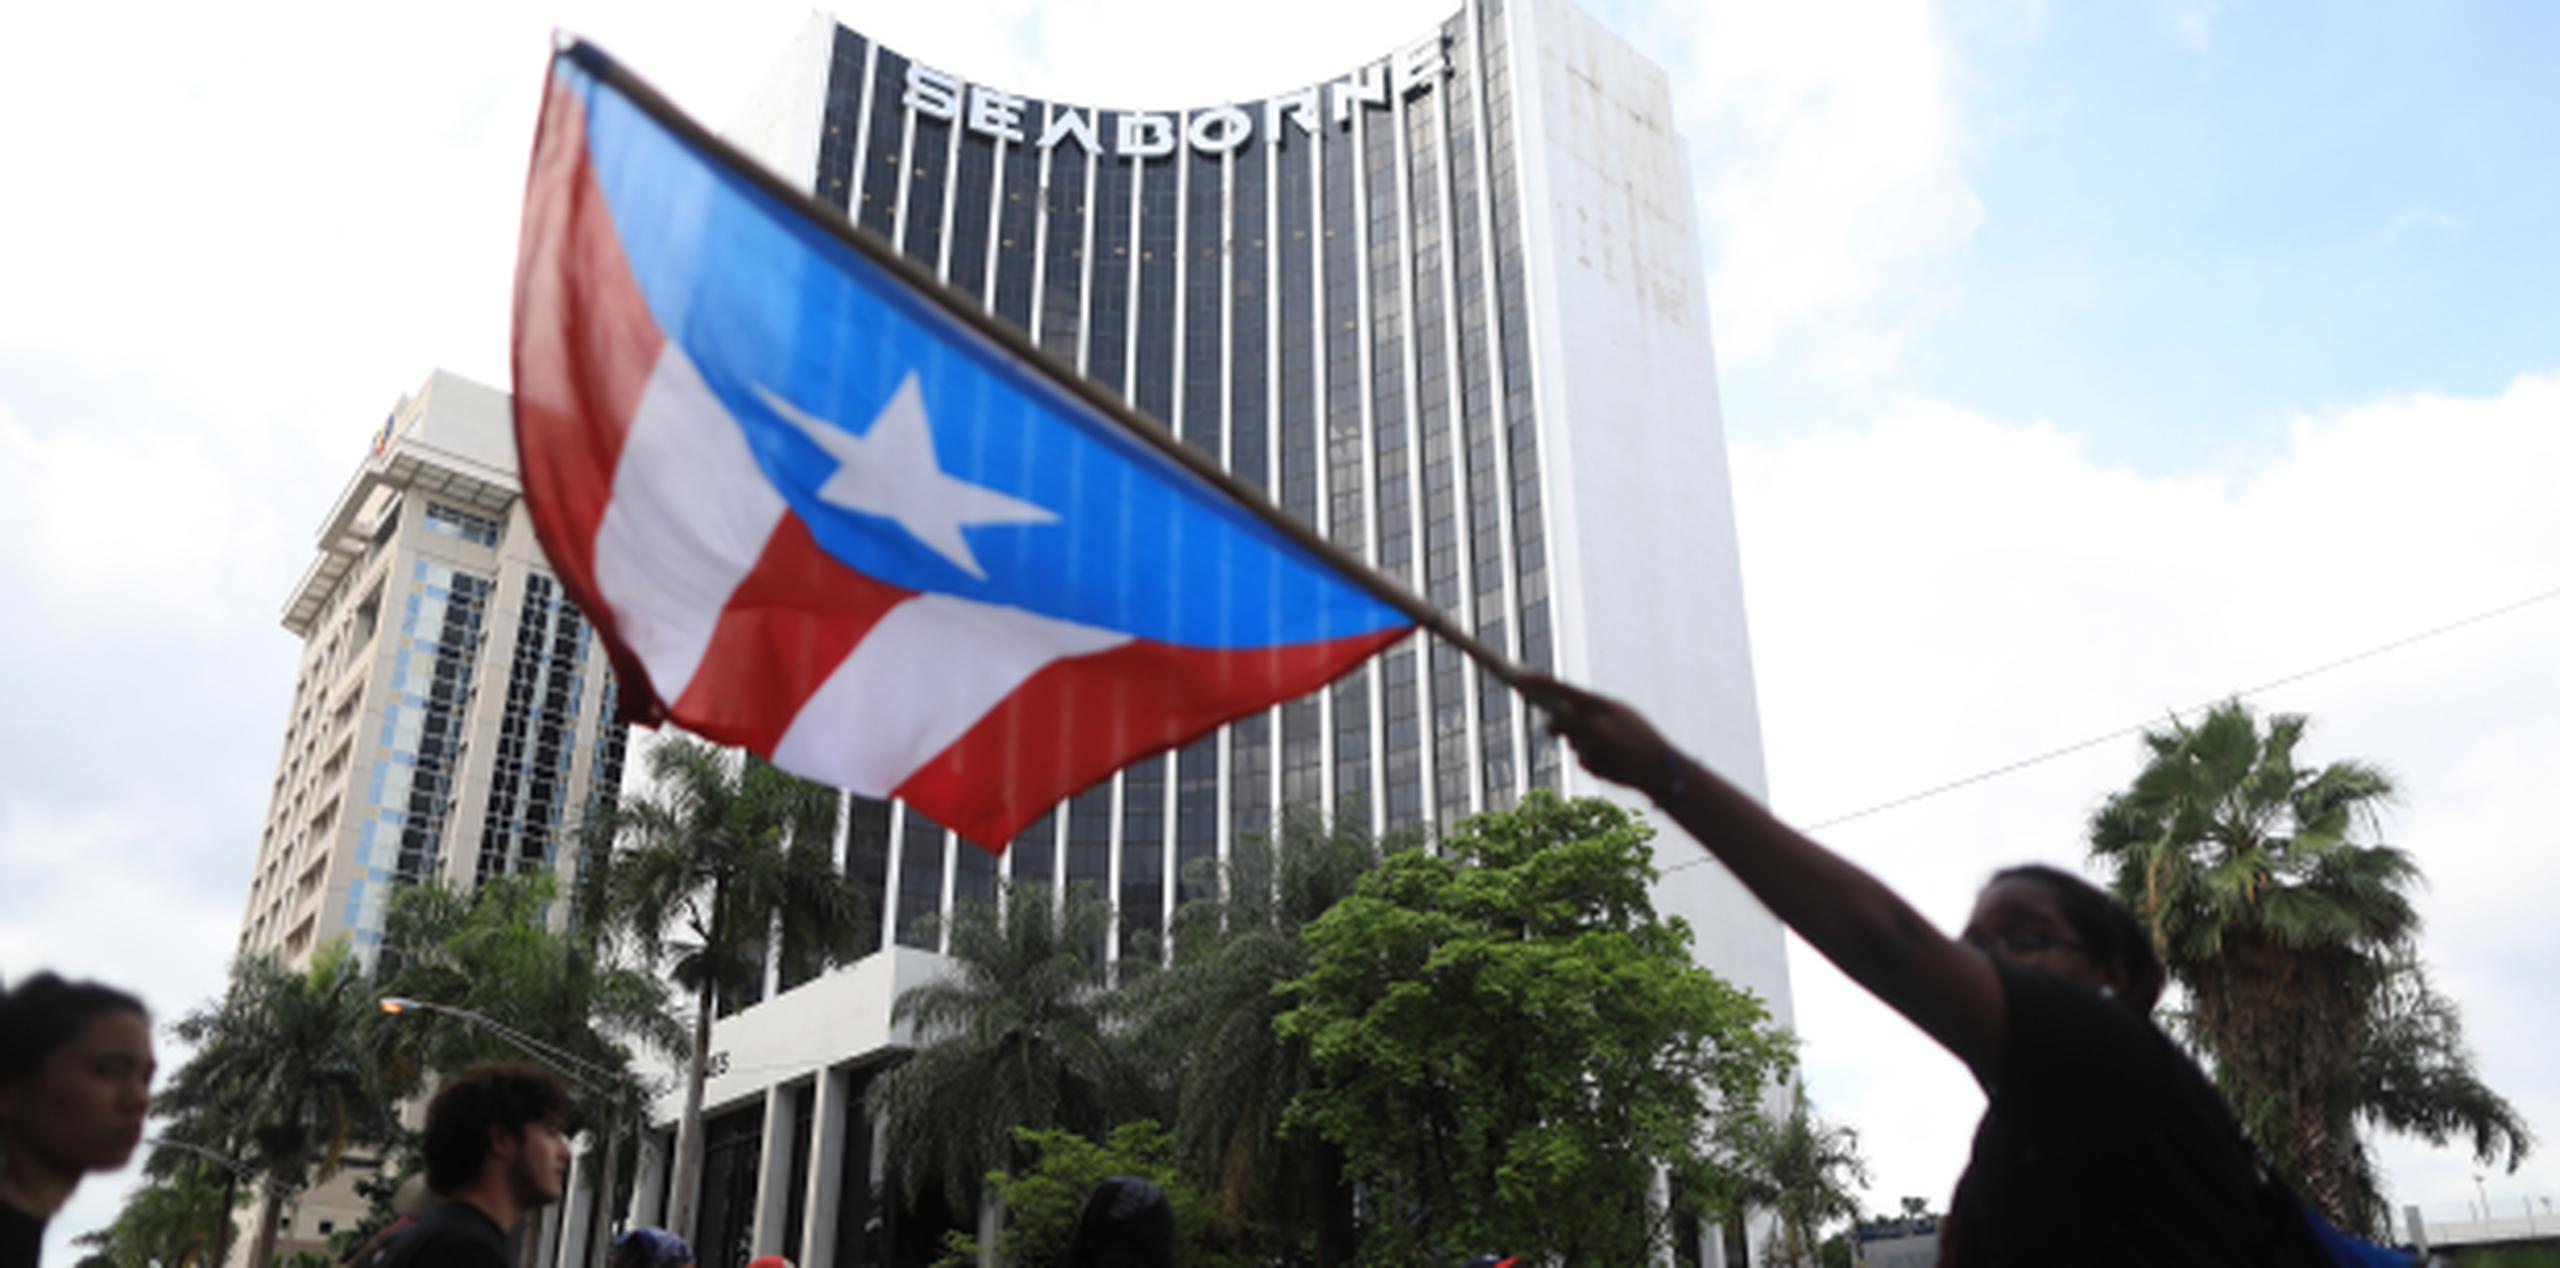 "Puerto Rico no se puede convertir en una anarquía”, sentenció el legislador. (Archivo)